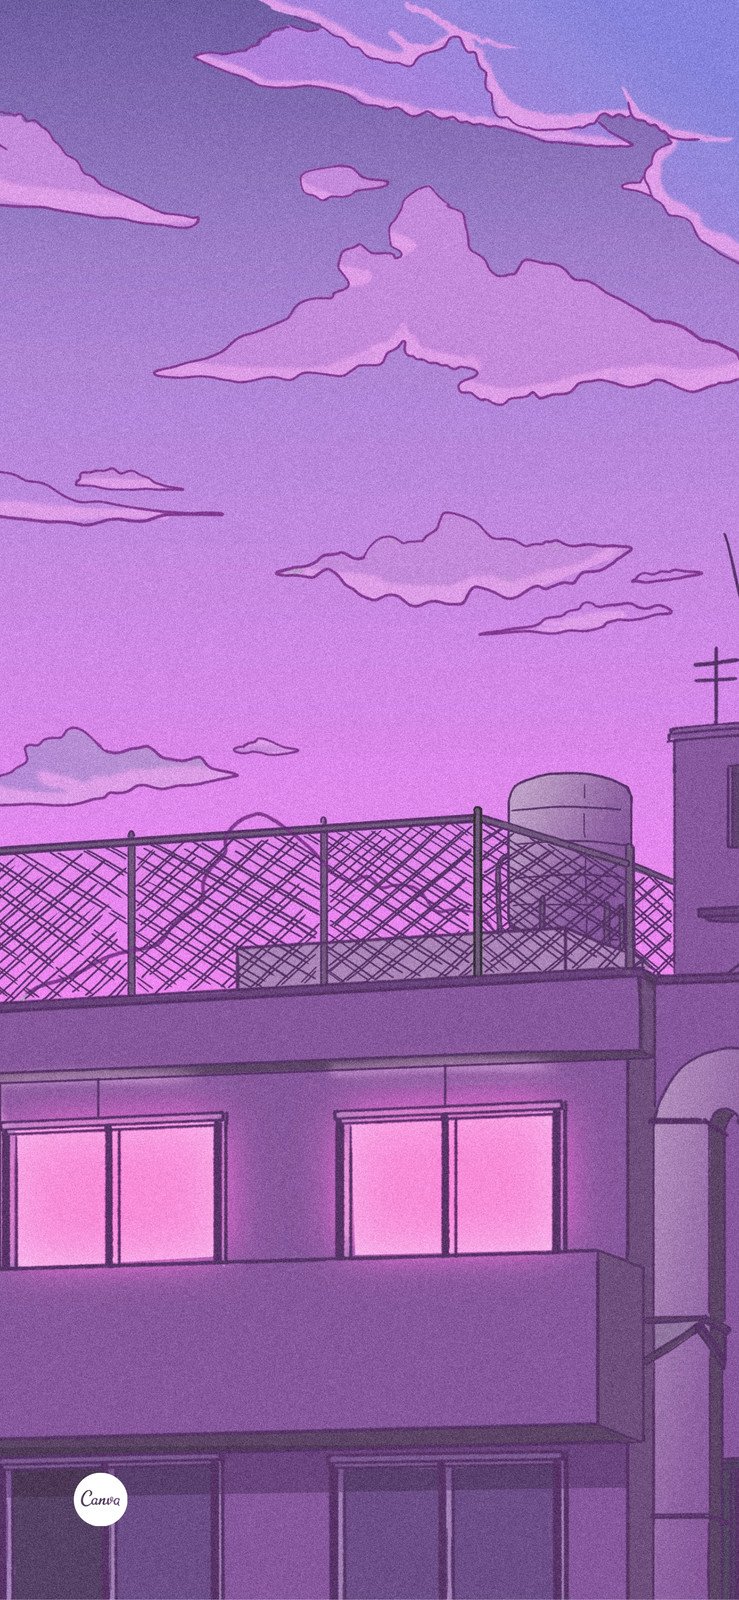 紫色日式插画背景屋顶渐变云彩手绘分享新手机壁纸 模板 Canva可画